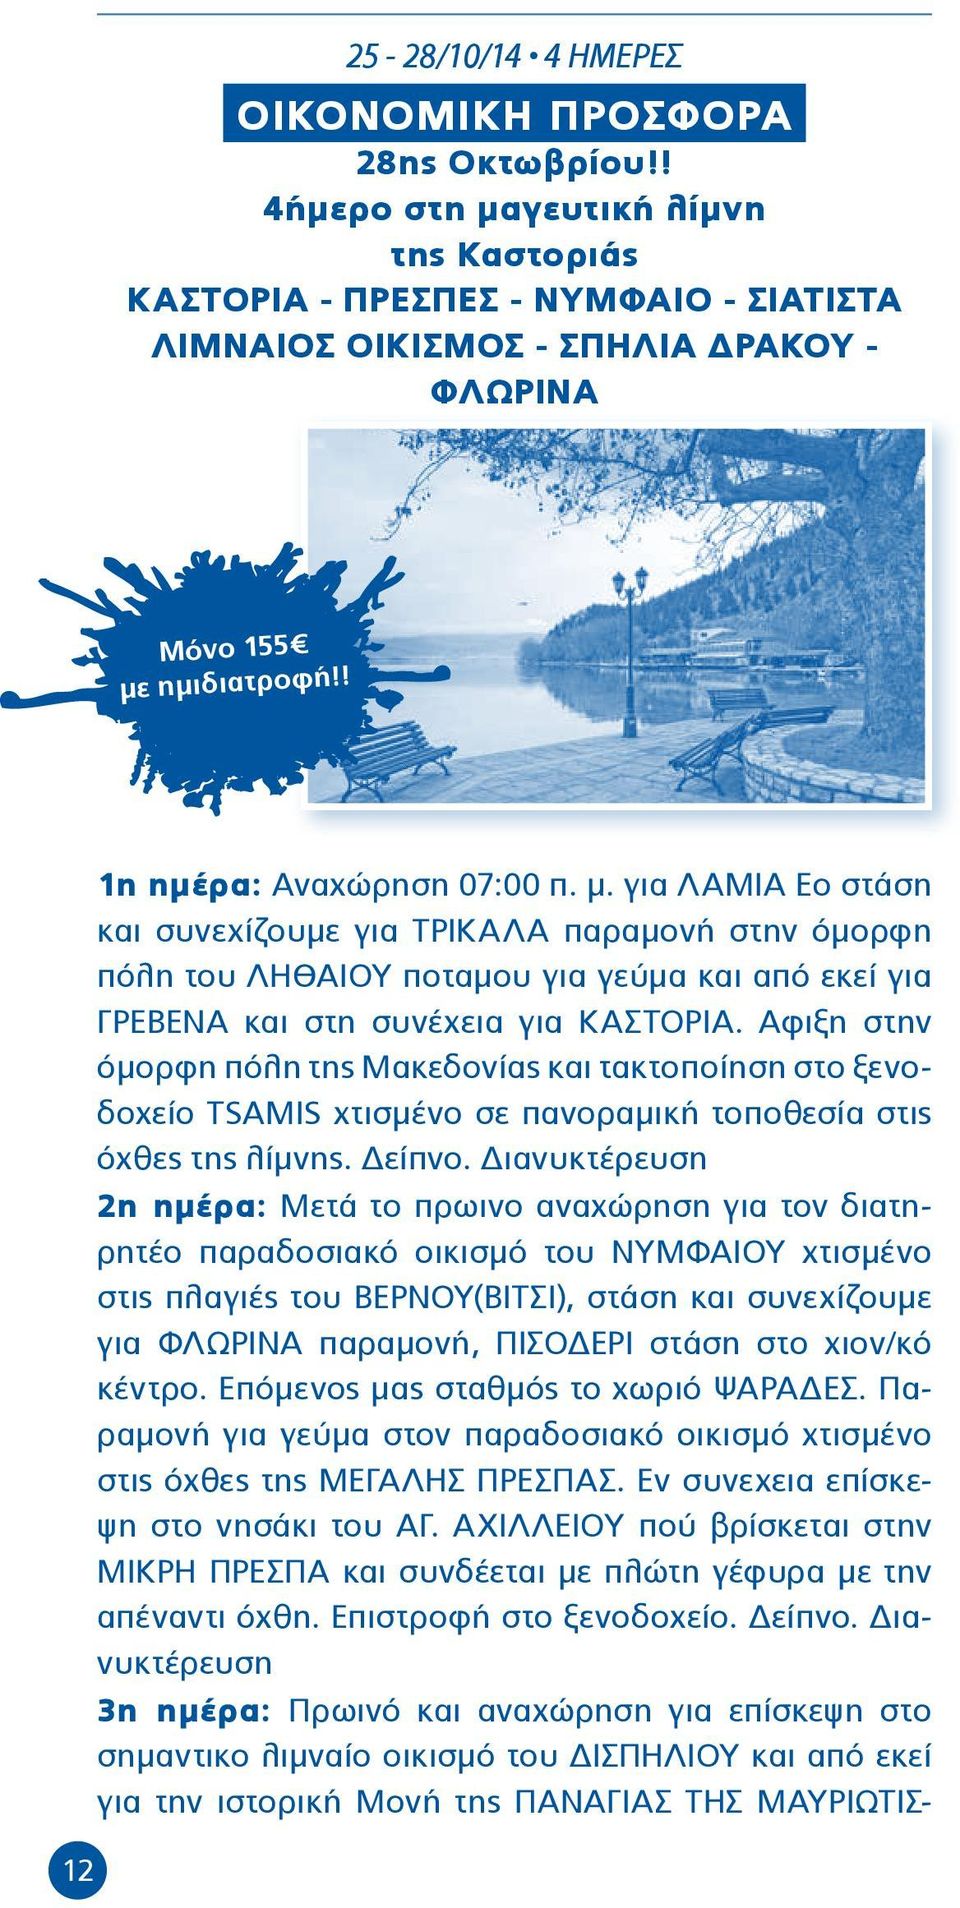 Αφιξη στην όμορφη πόλη της Μακεδονίας και τακτοποίηση στο ξενοδοχείο TSAMIS χτισμένο σε πανοραμική τοποθεσία στις όχθες της λίμνης. Δείπνο.